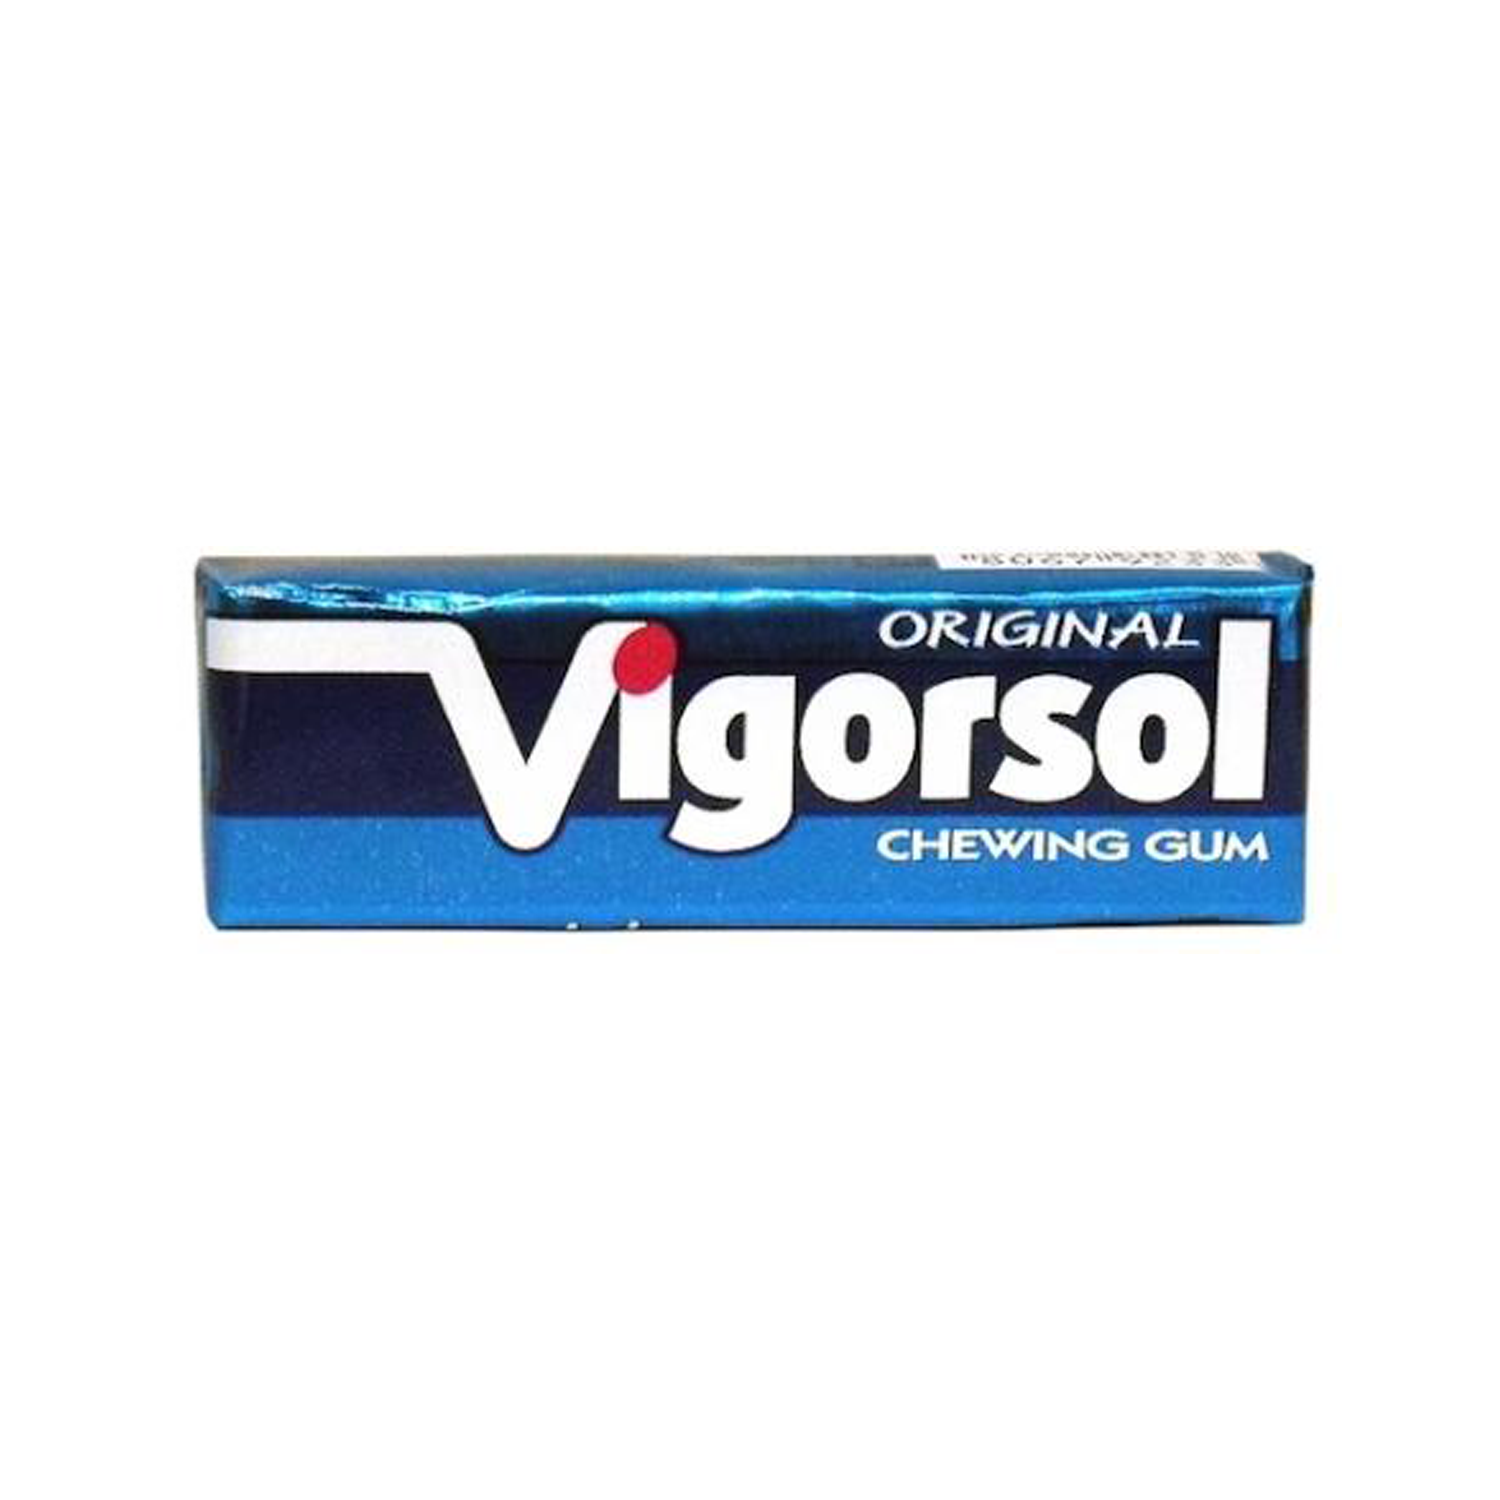 VIGORSOL Original stick